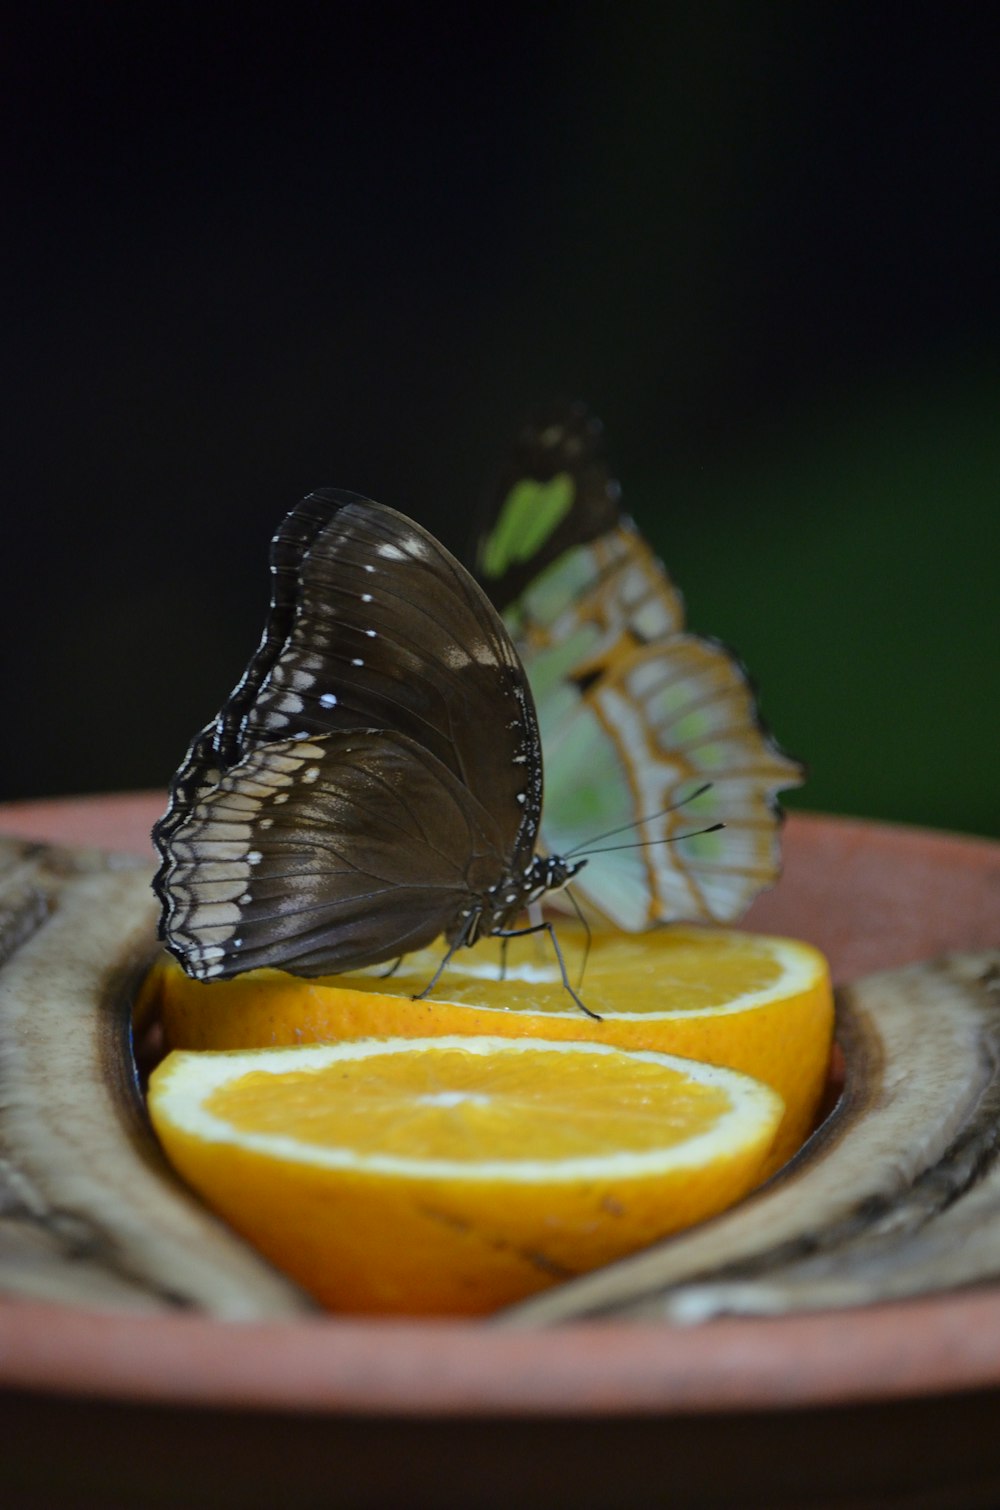 접시 위의 오렌지 조각에 앉아있는 나비